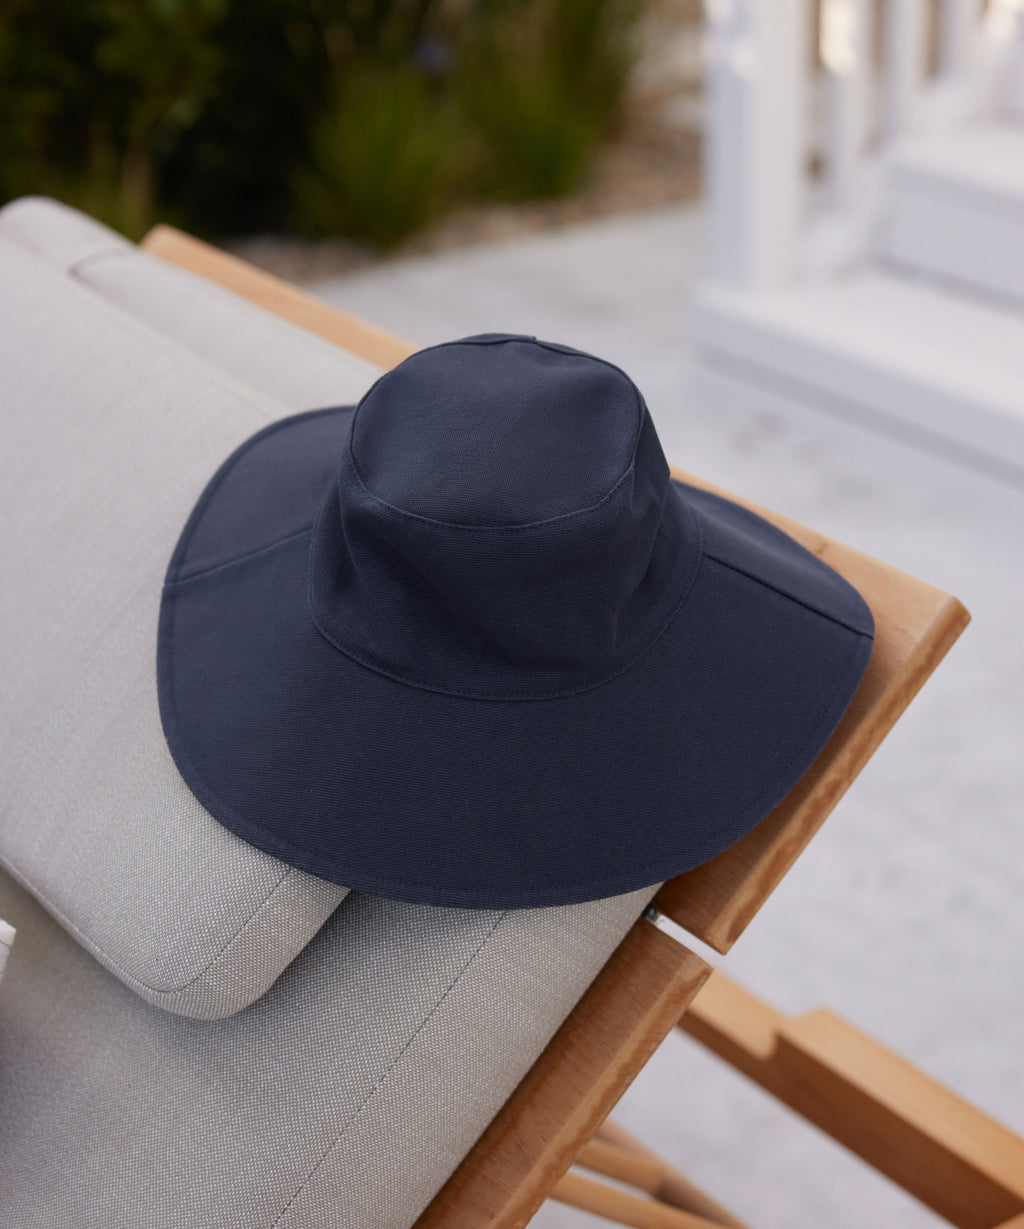 Jenni Kayne Women's Cotton Canvas Sun Hat Size Small/Medium